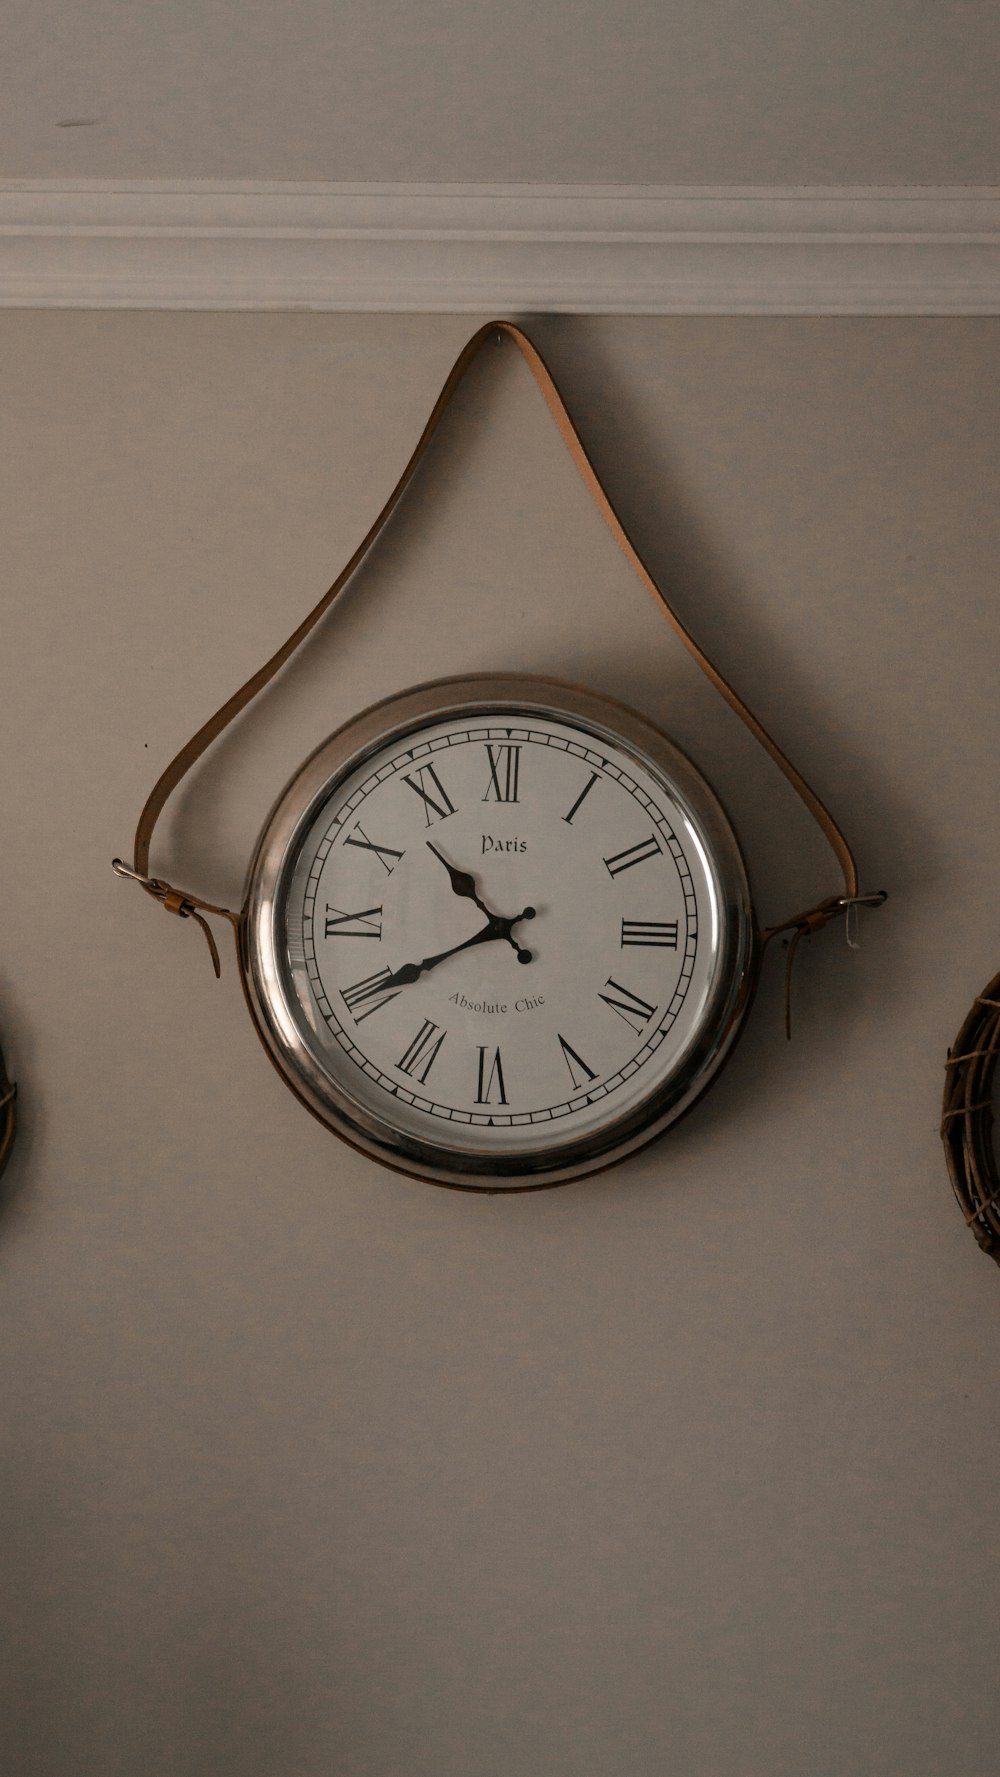 2つの時計の隣の壁に掛かっている時計